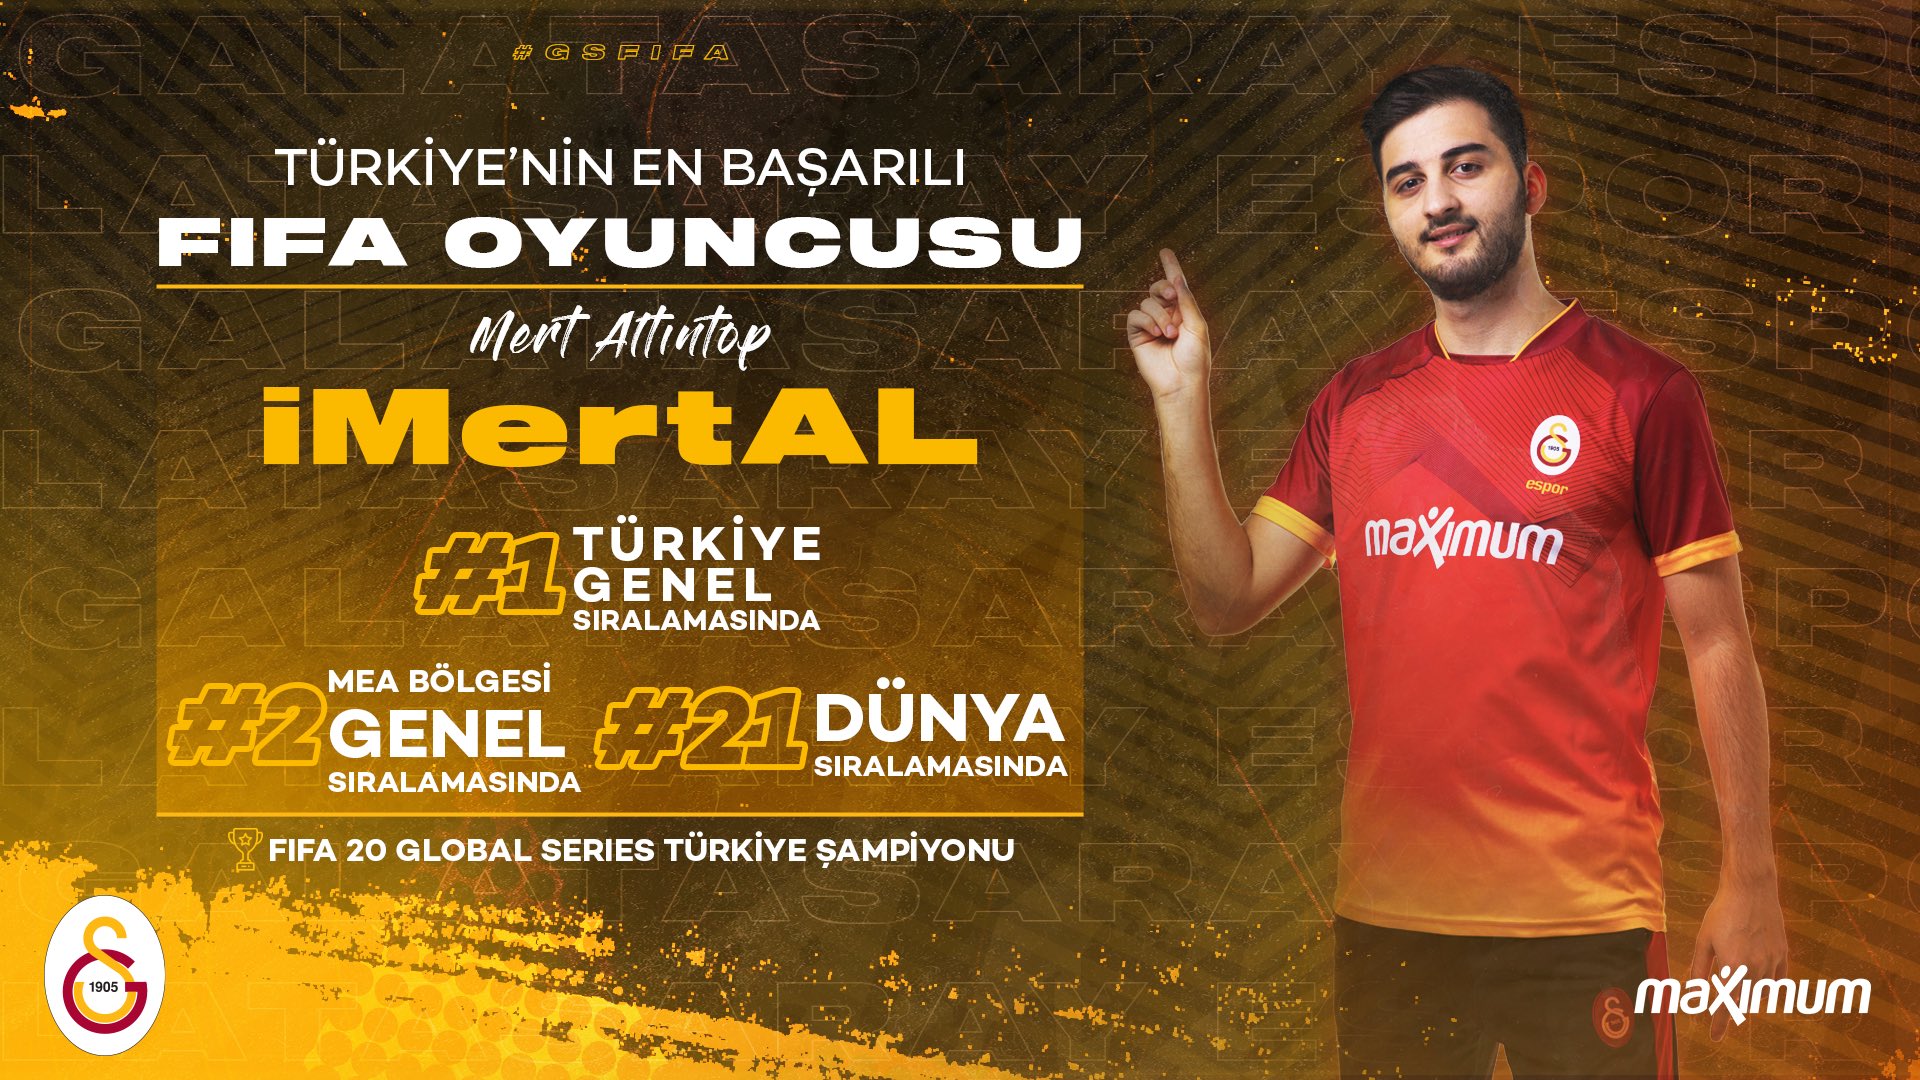 iMertAL, Galatasaray Espor'dan ayrıldığını açıkladı